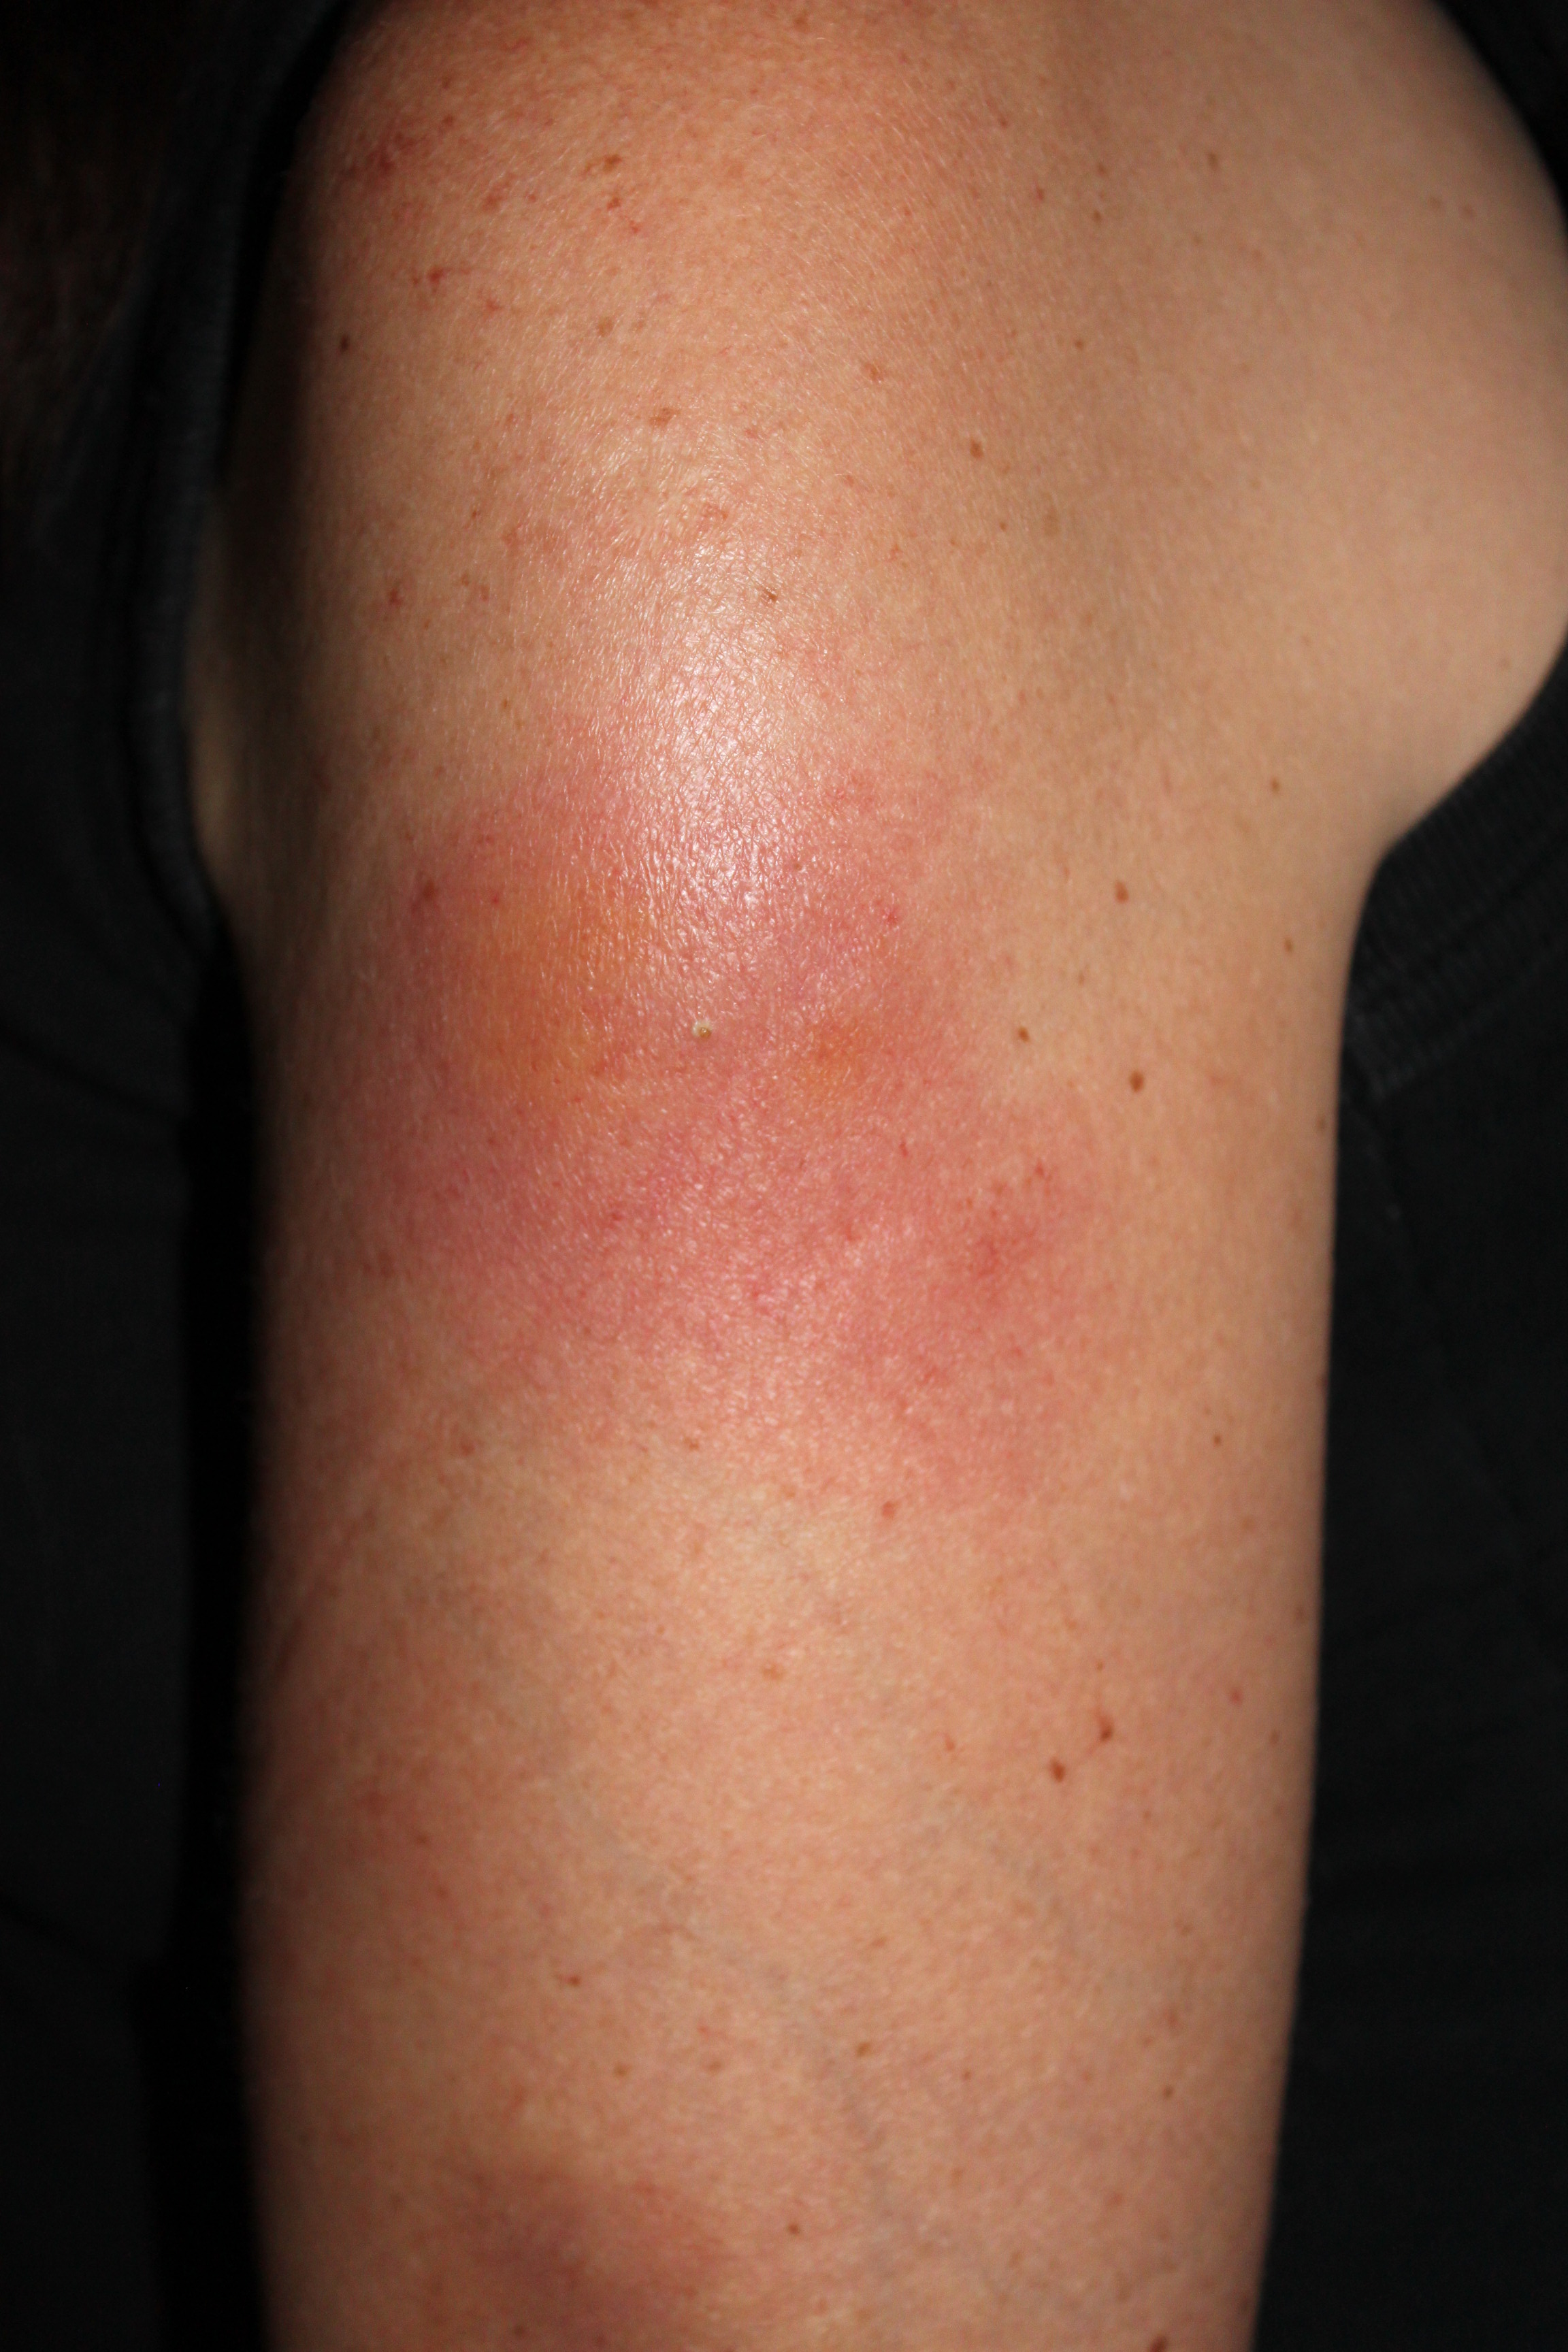 Lower Leg Rash - Dermatology - MedHelp